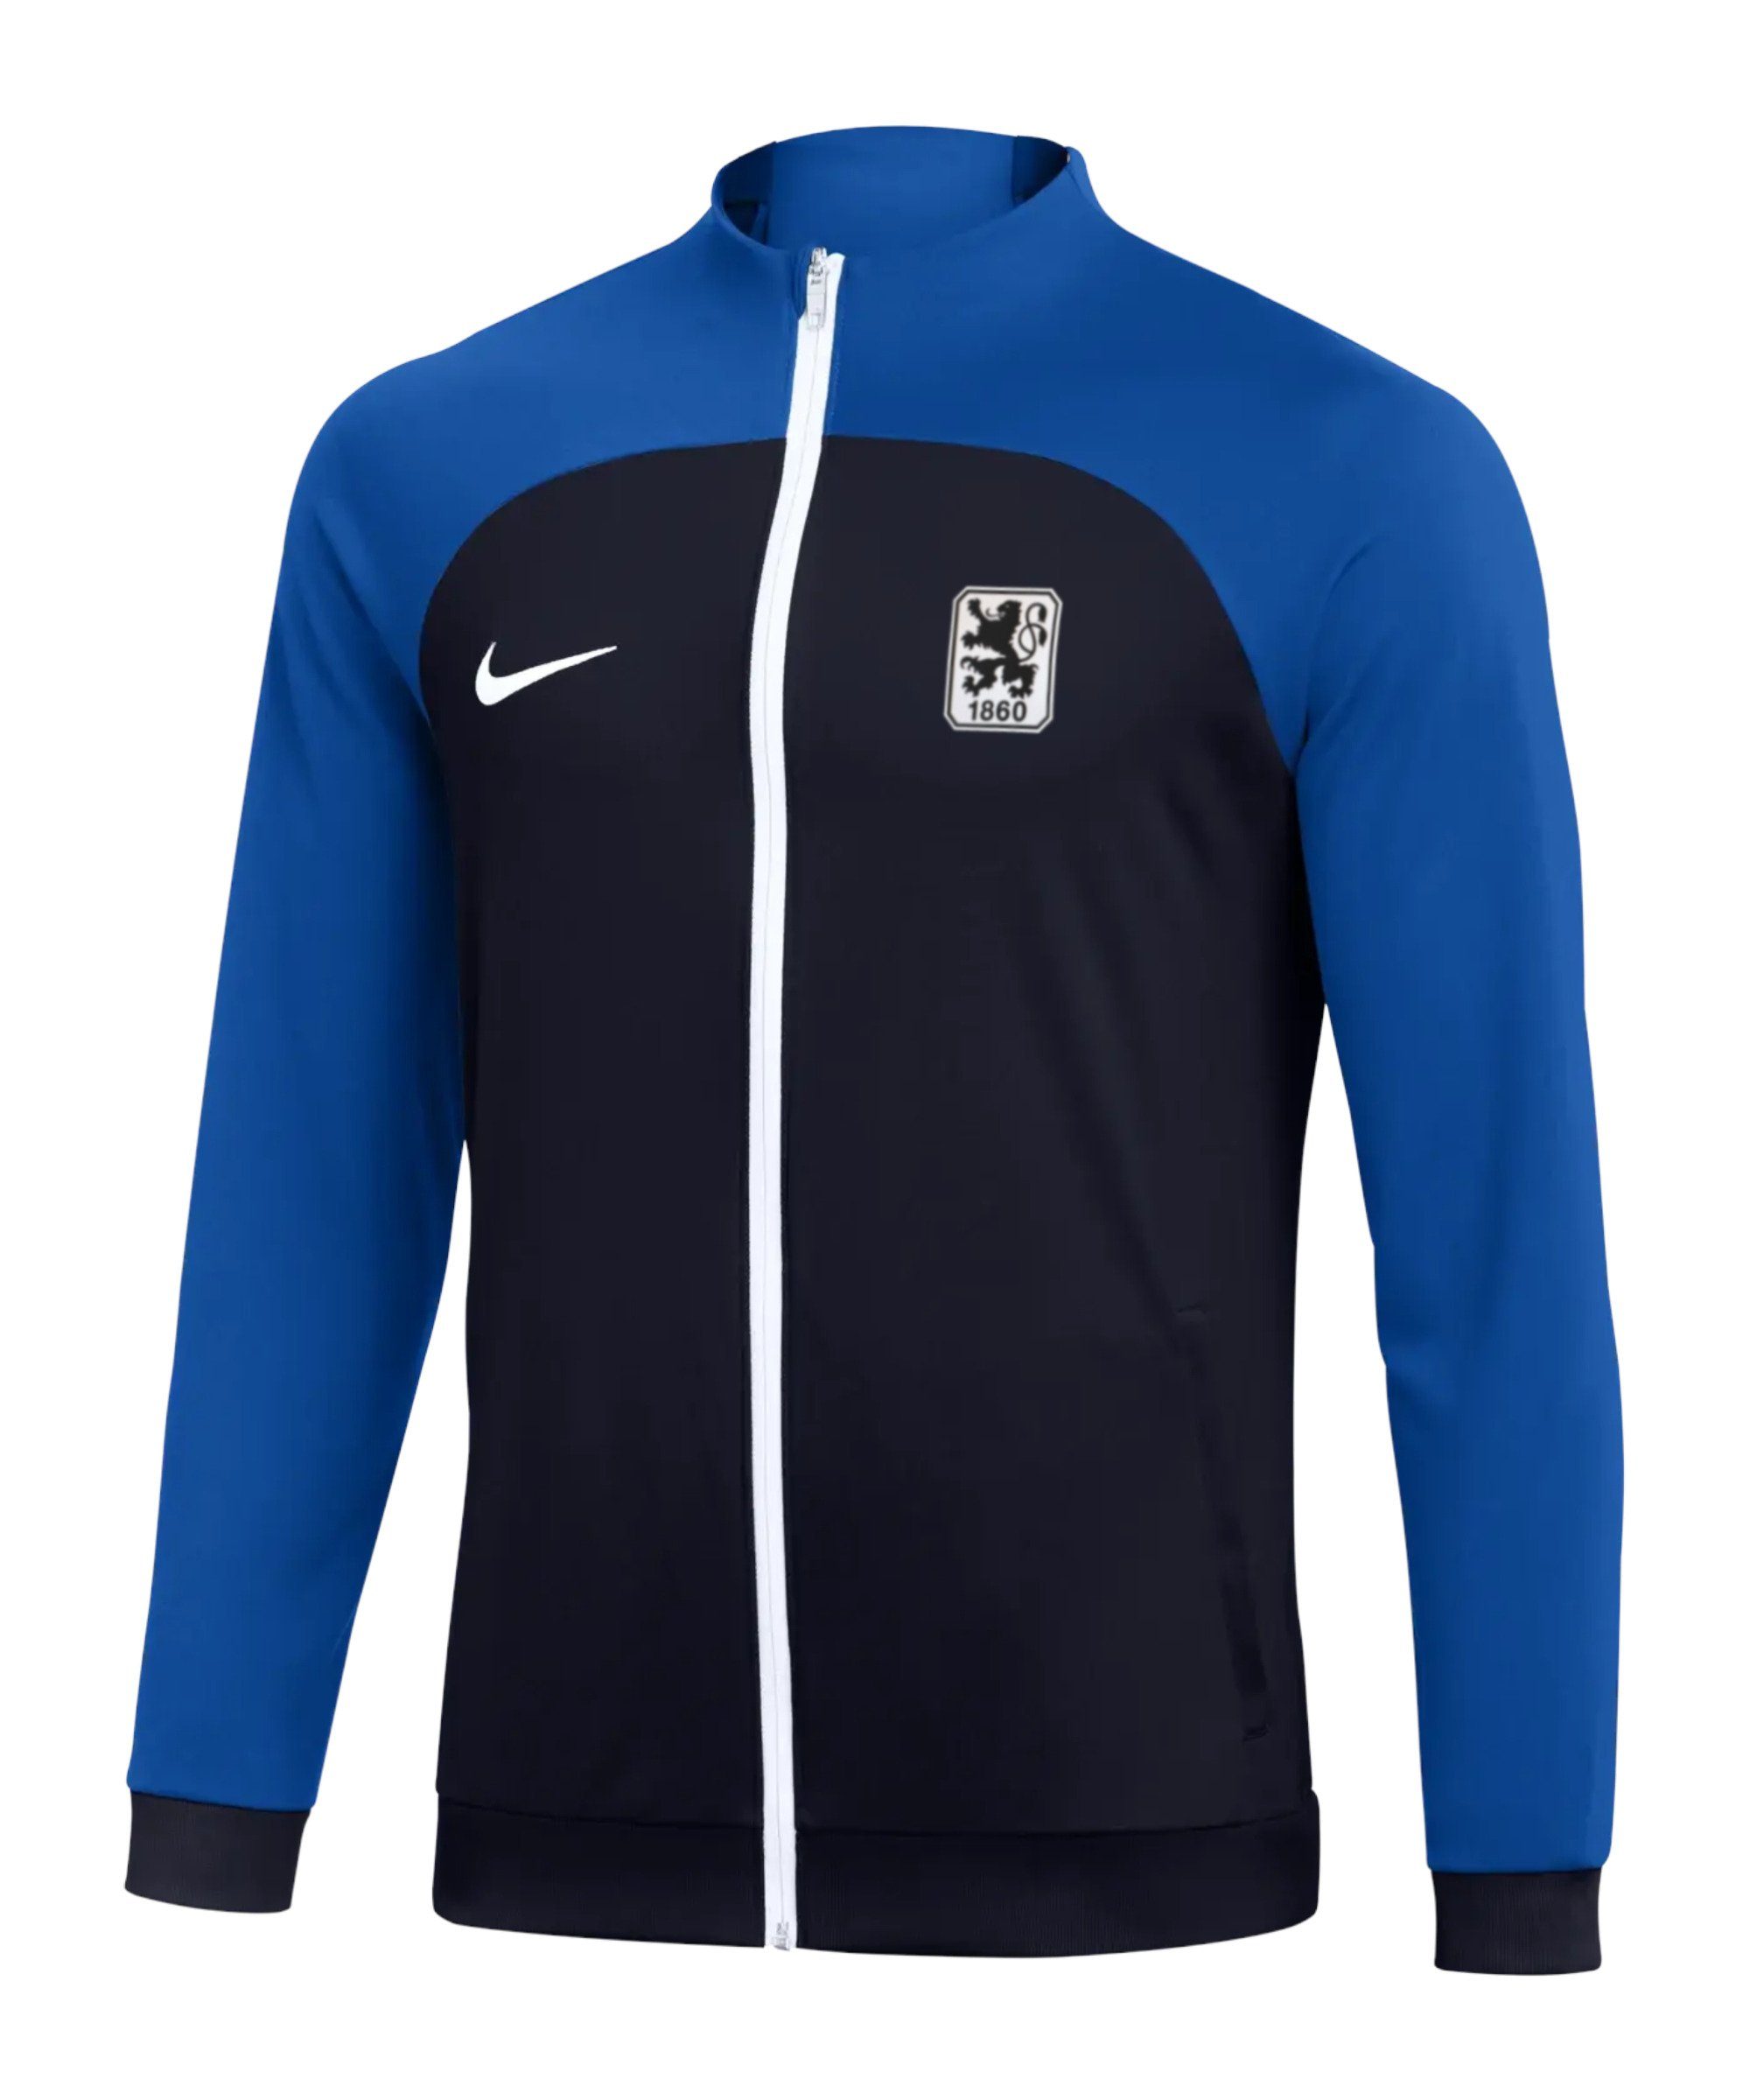 Nike Sweatjacke TSV Trainingsjacke München 1860